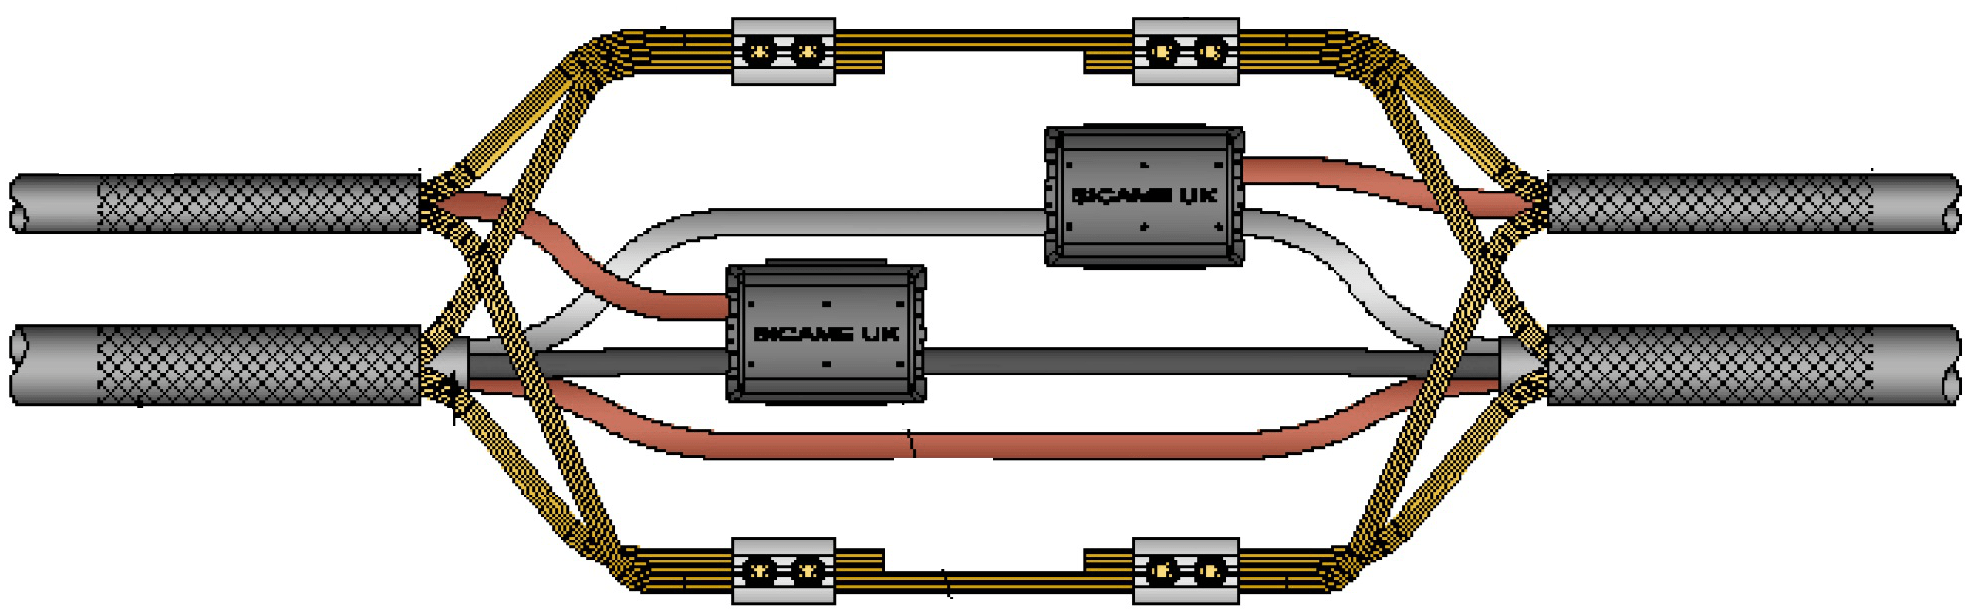 单级或三级可塑CNE16sqm至35sqm服务分支电缆联合